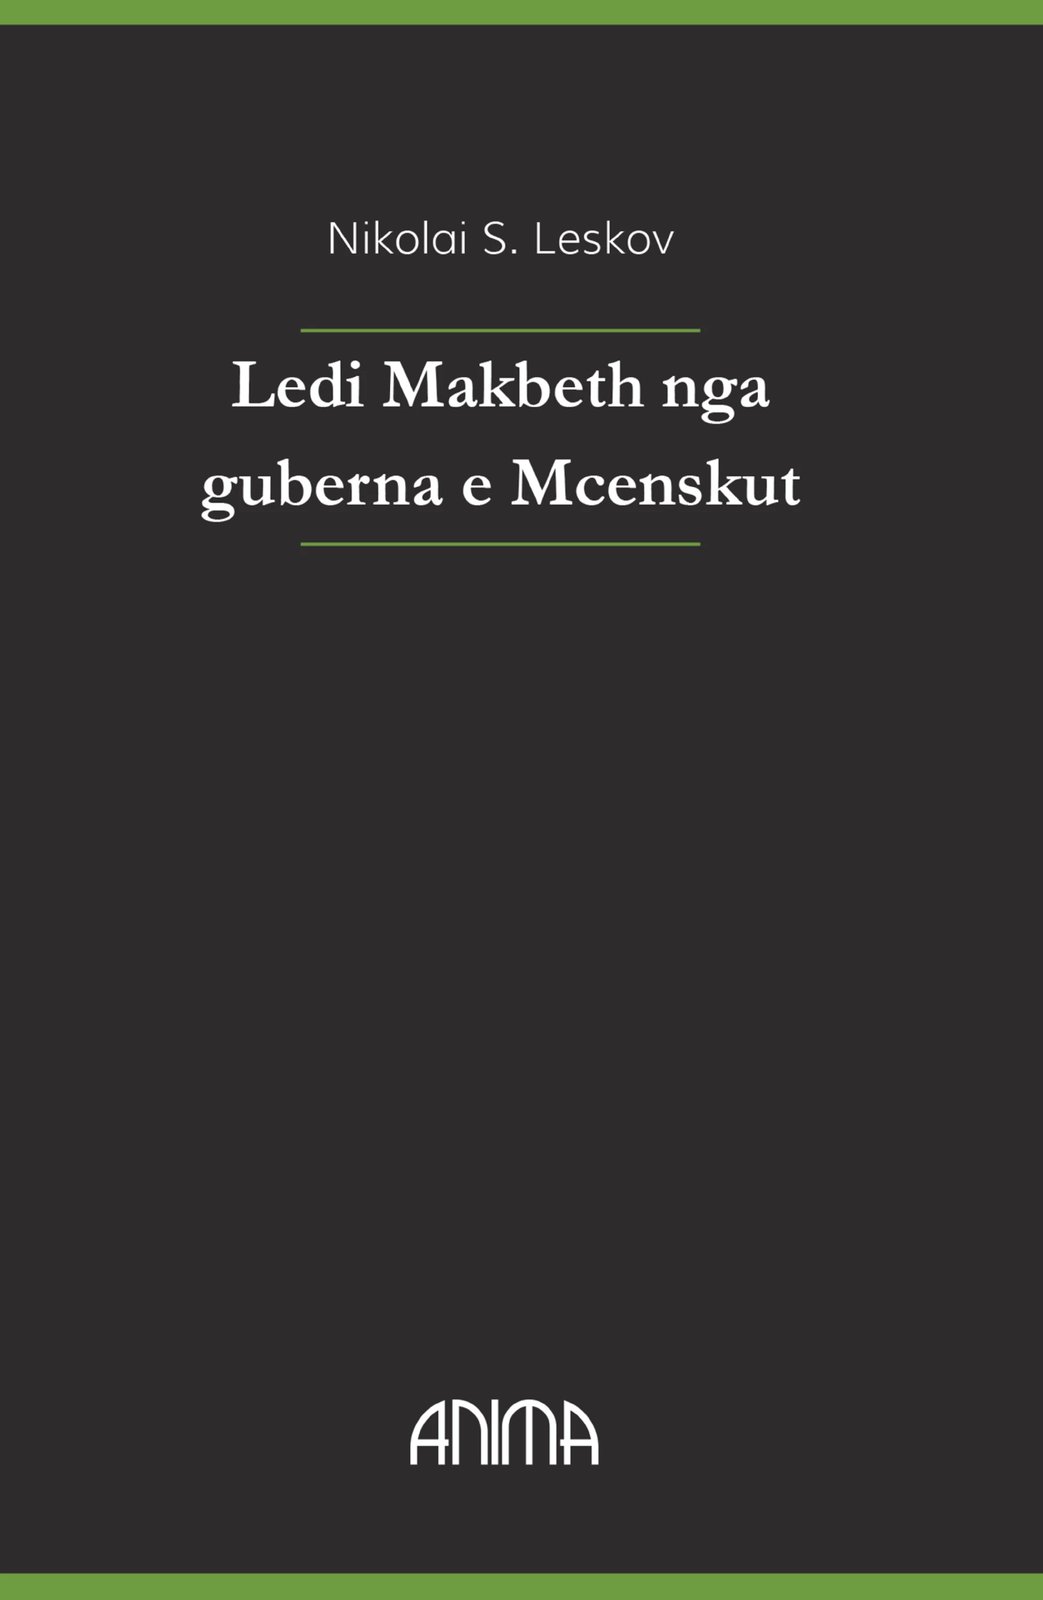 Ledi Makbeth nga guberna e Mcenskut, autori Nikolai S. Leskov